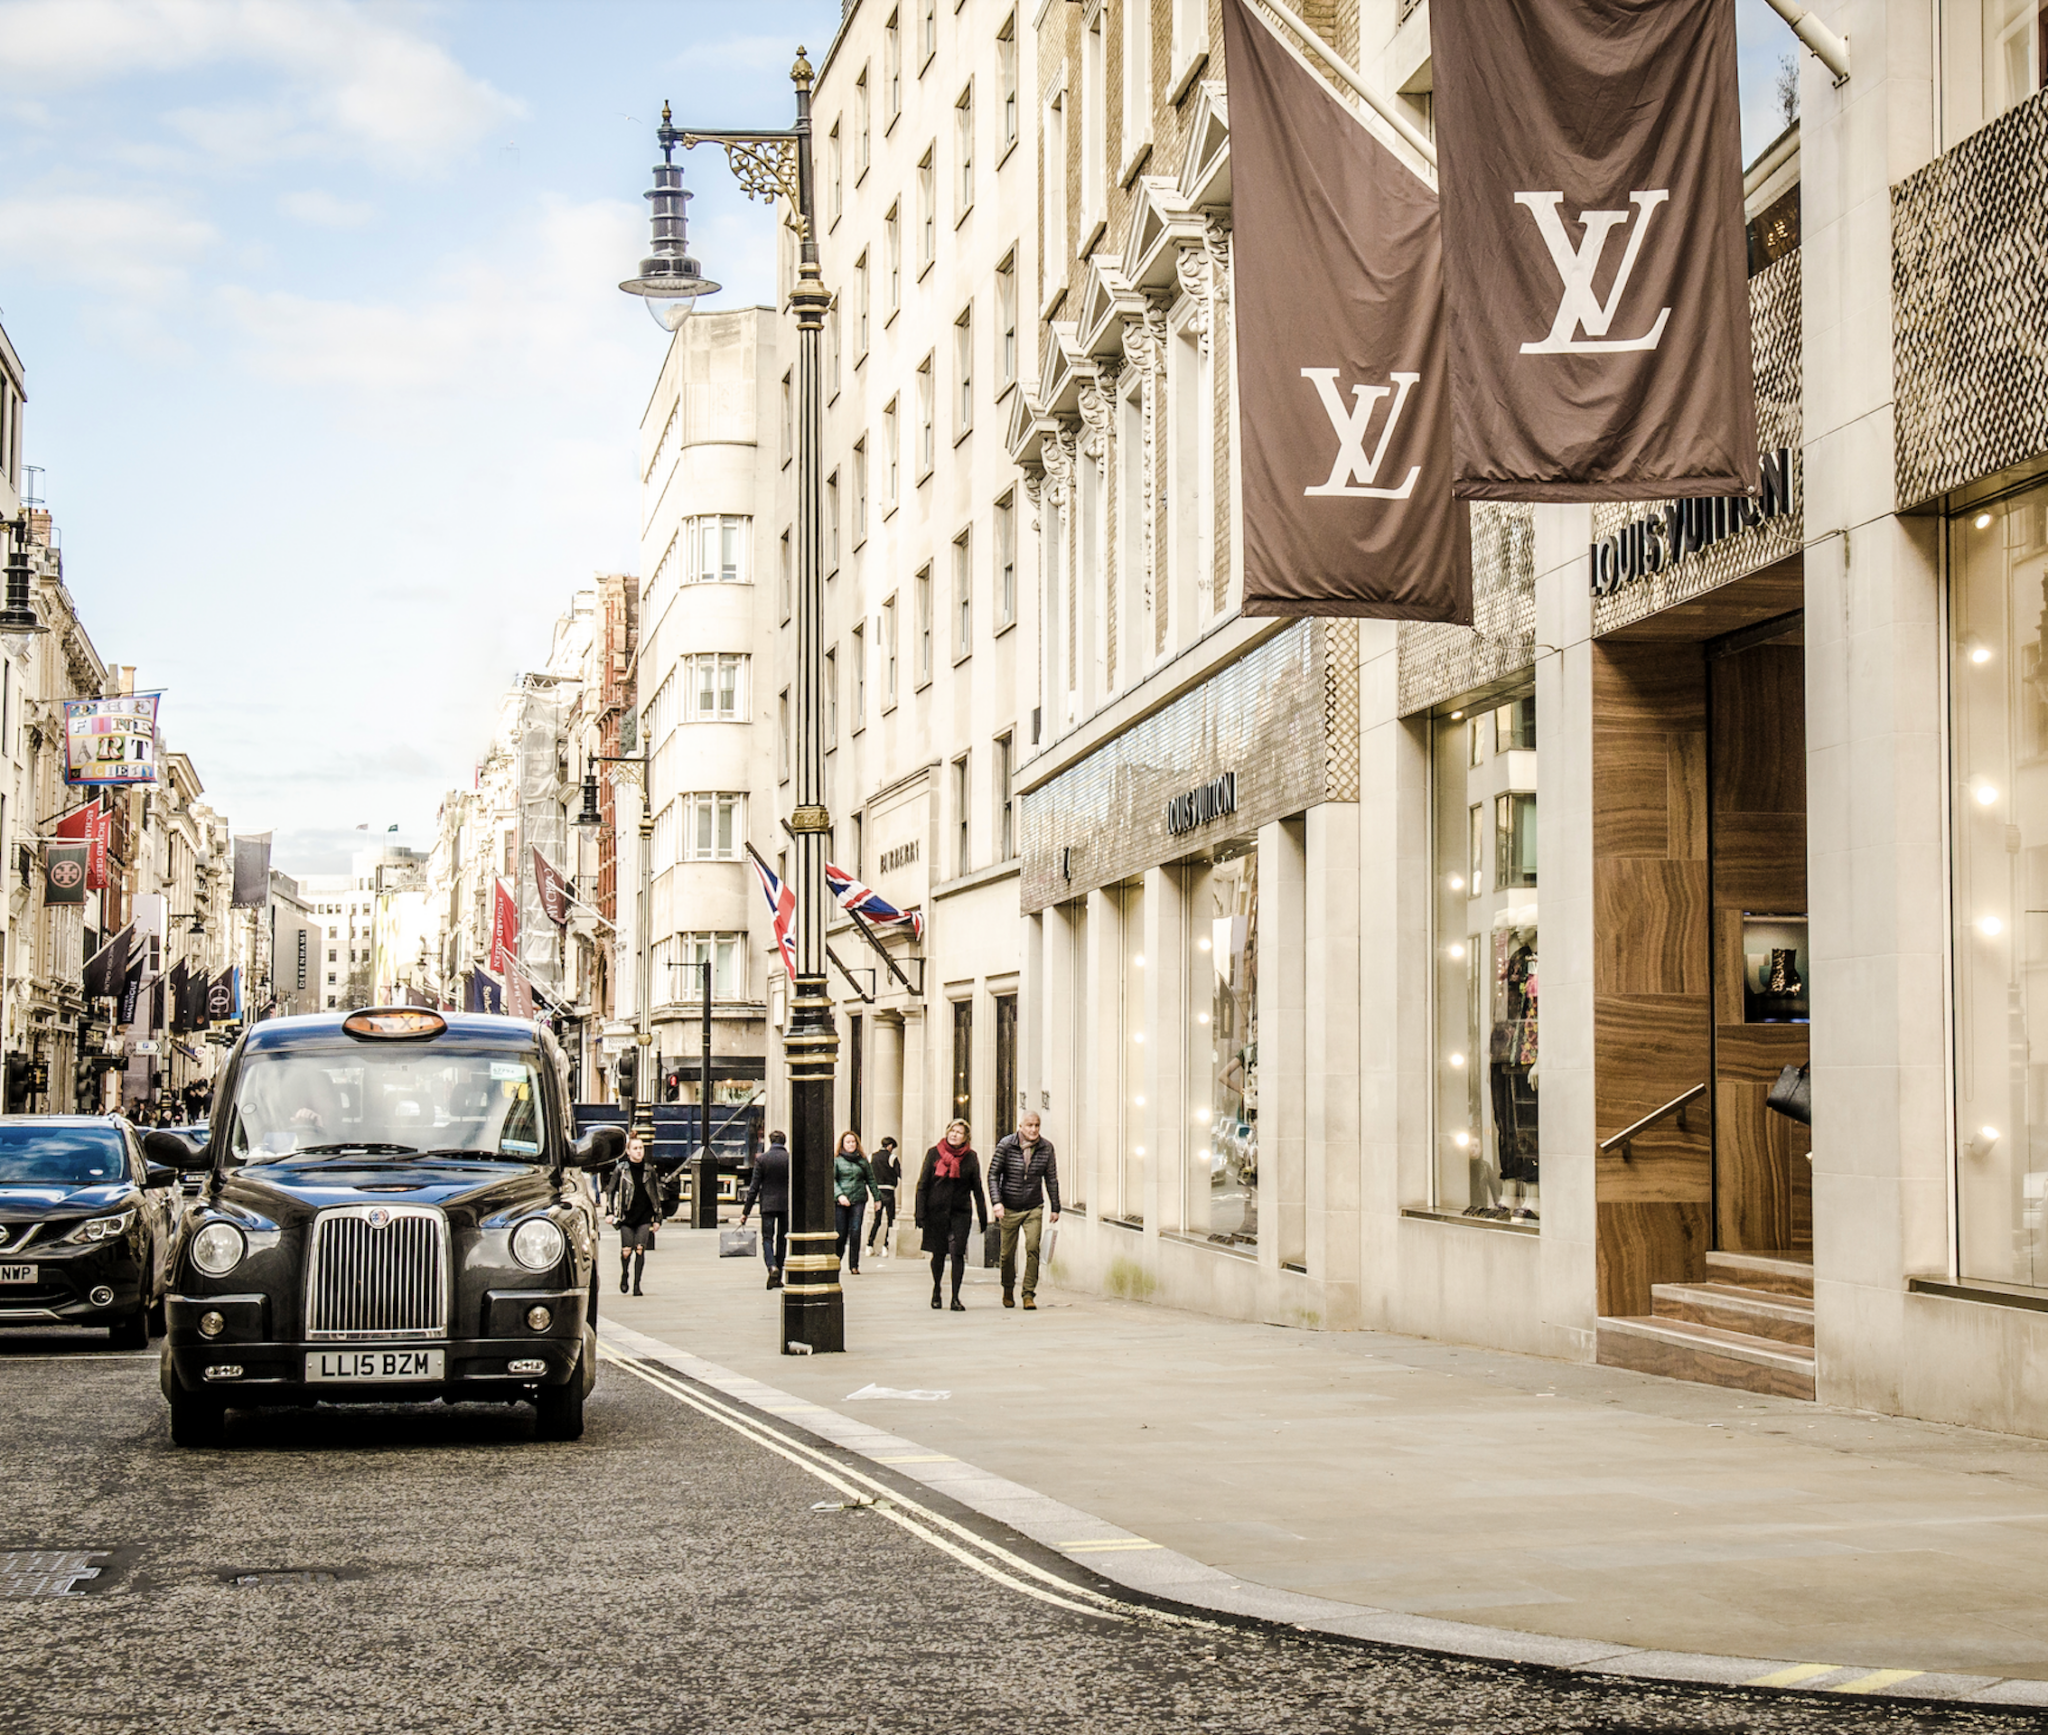 Louis Vuitton's Paris HQ Could Become LVMH's Next Hotel-Megastore